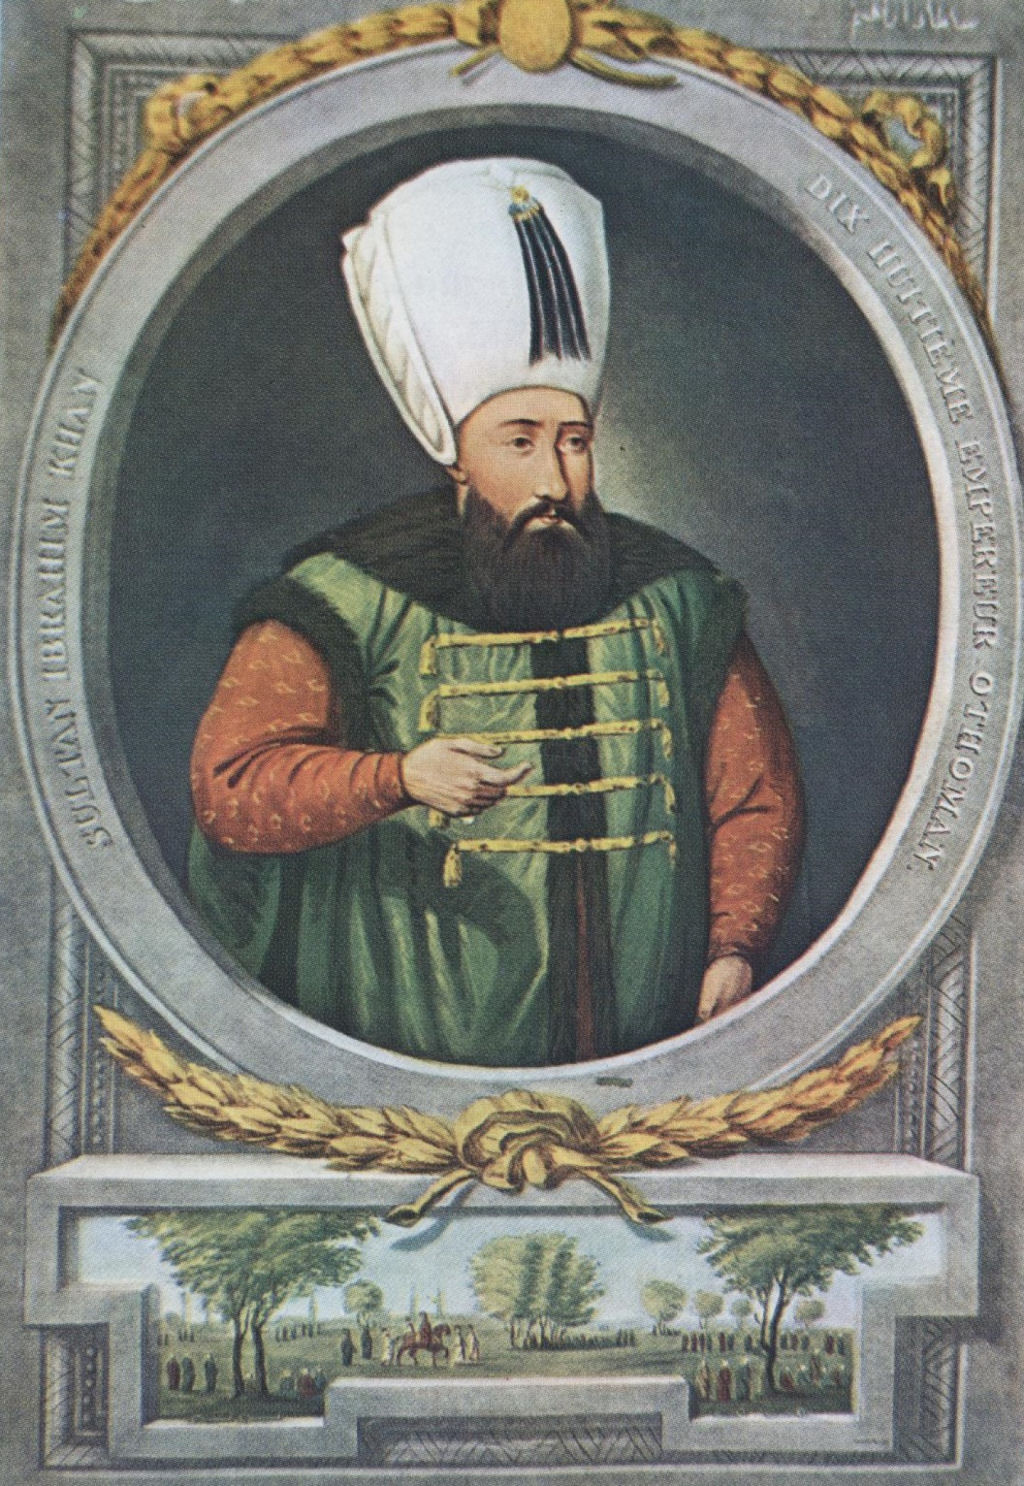 Os sultes otomanos que quase enlouqueceram por serem criados em 'gaiolas'